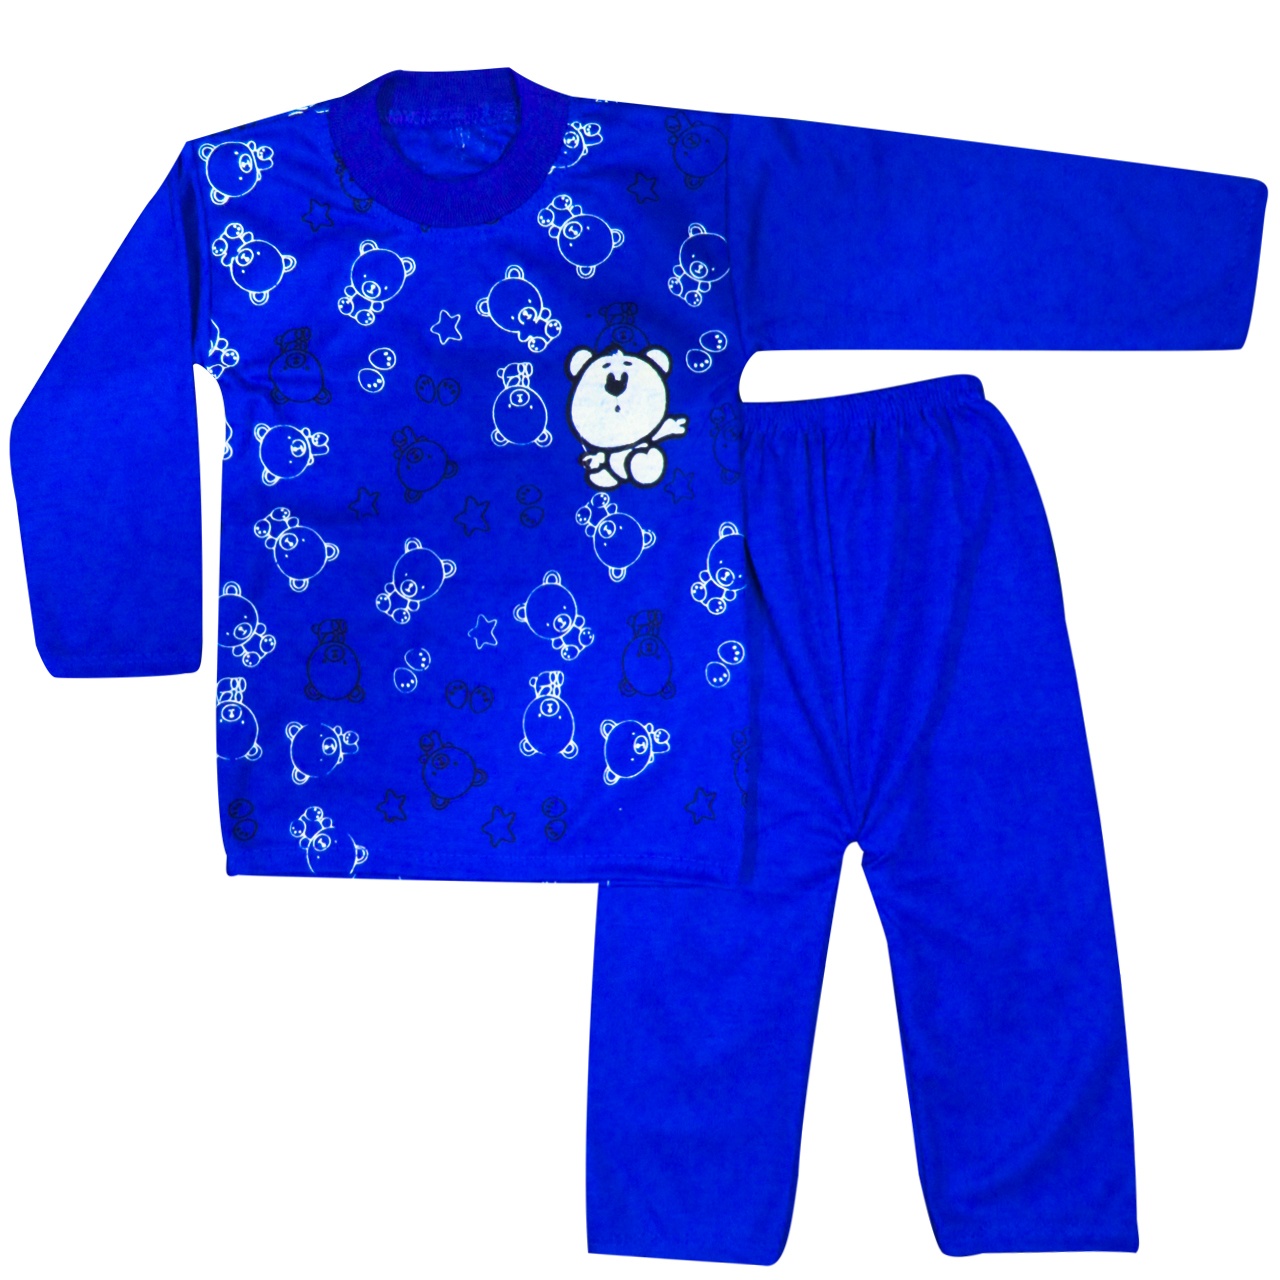 ست تی شرت و شلوار نوزادی مدل Panda رنگ آبی